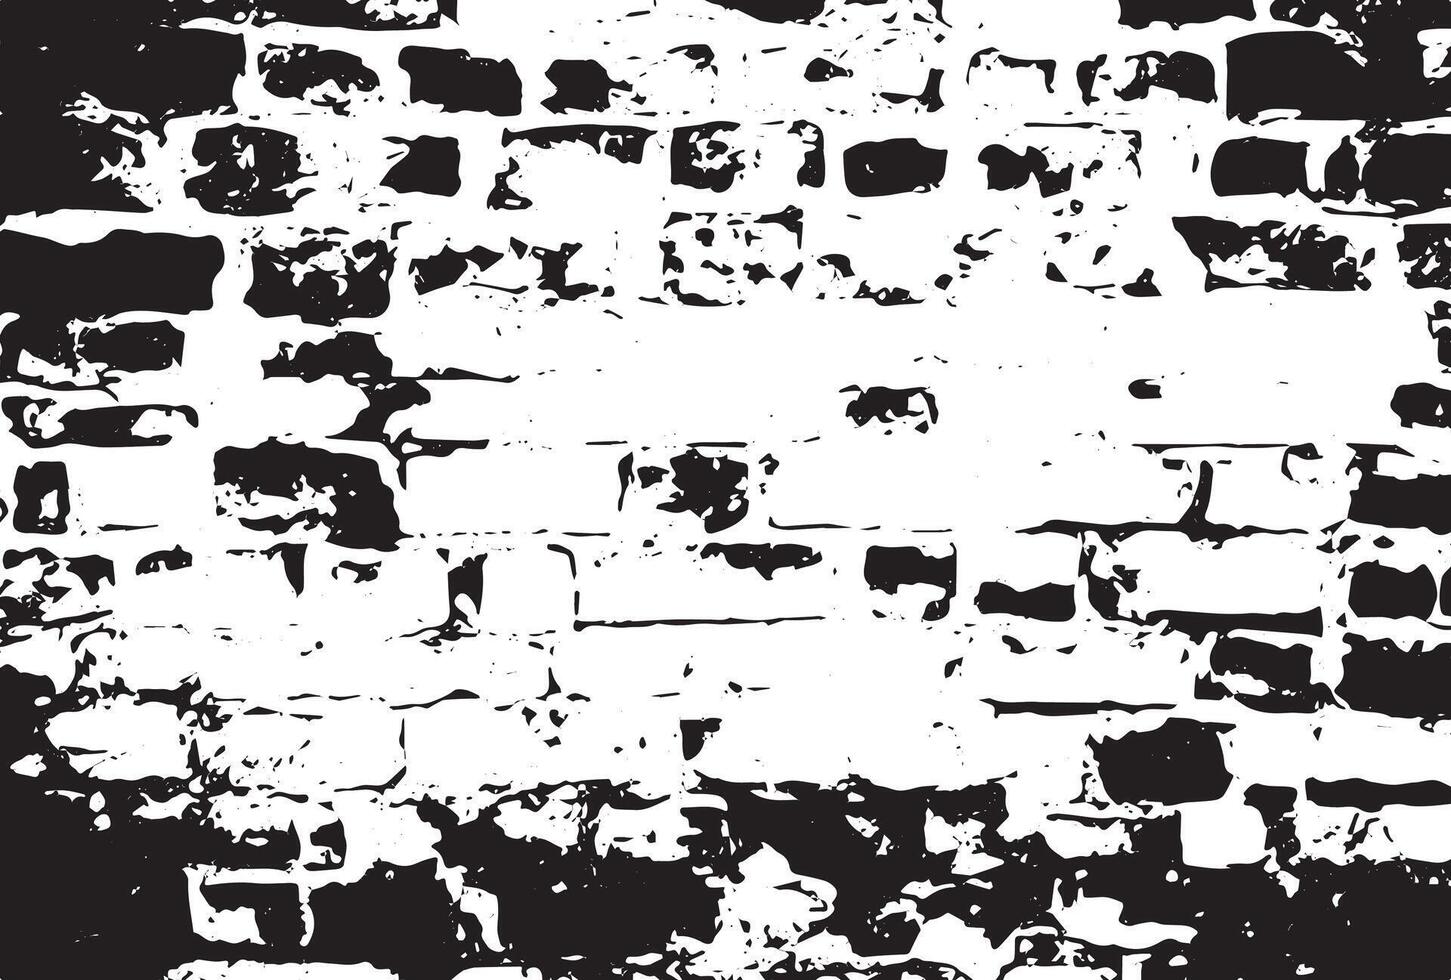 Texture of damaged brick wall vector